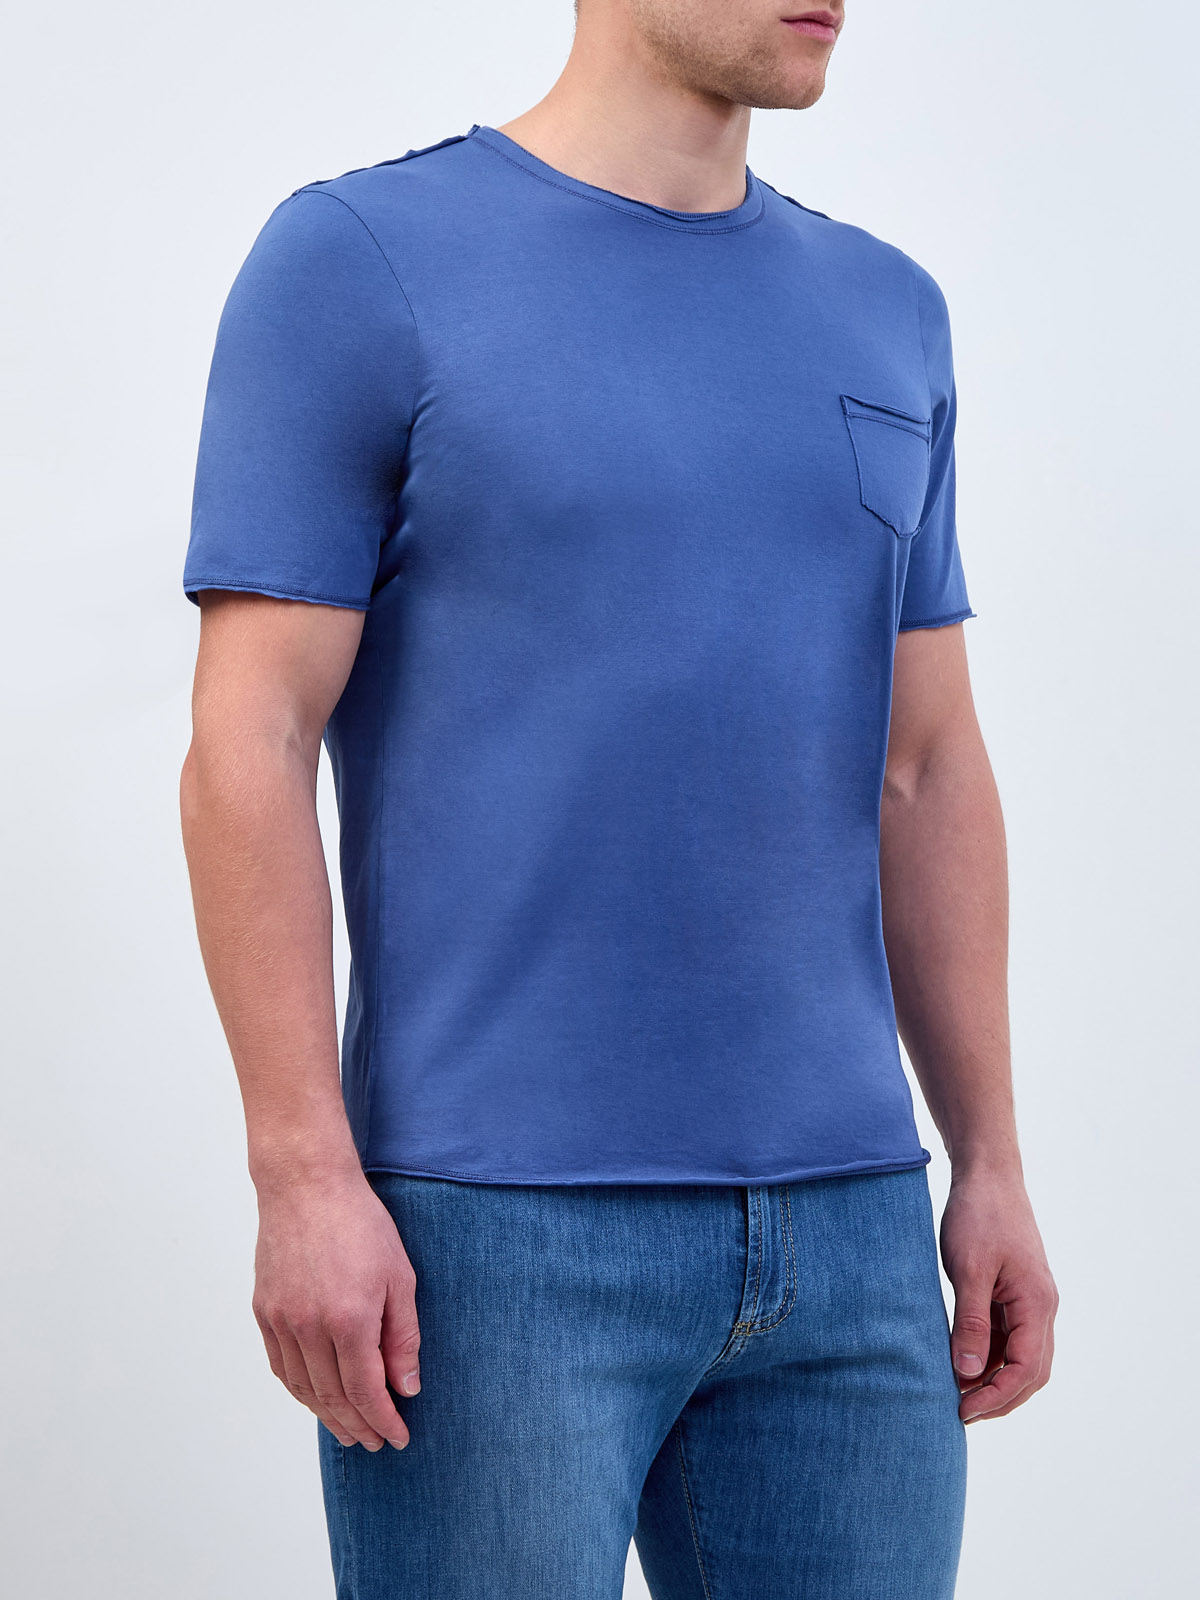 Хлопковая футболка из тонкого джерси с фирменным патчем GRAN SASSO, цвет синий, размер 50;52;54;56;58 - фото 3